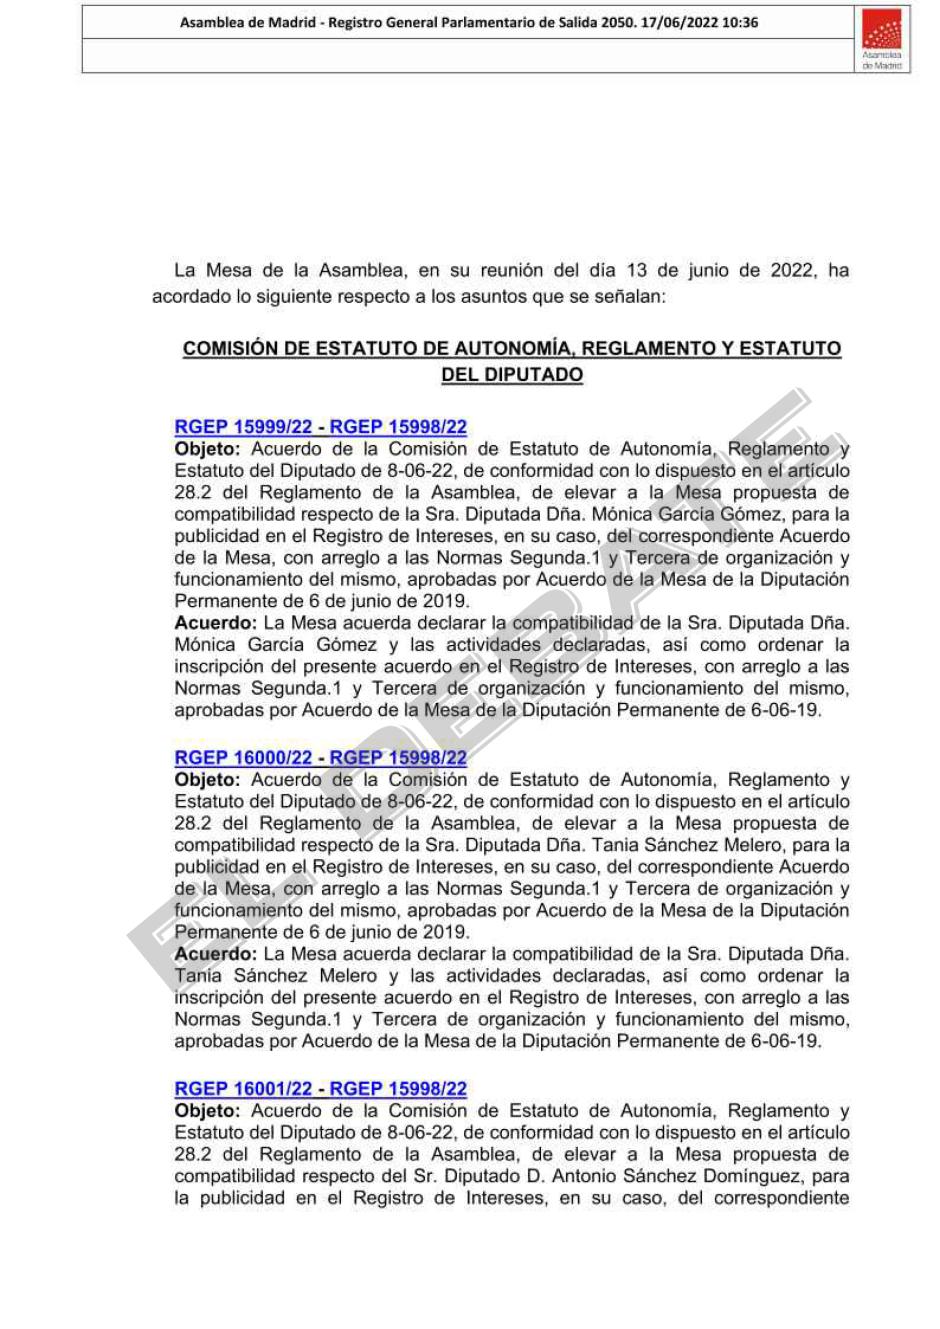 Resolución de la Asamblea de Madrid otorgando la dedicación exclusiva a García